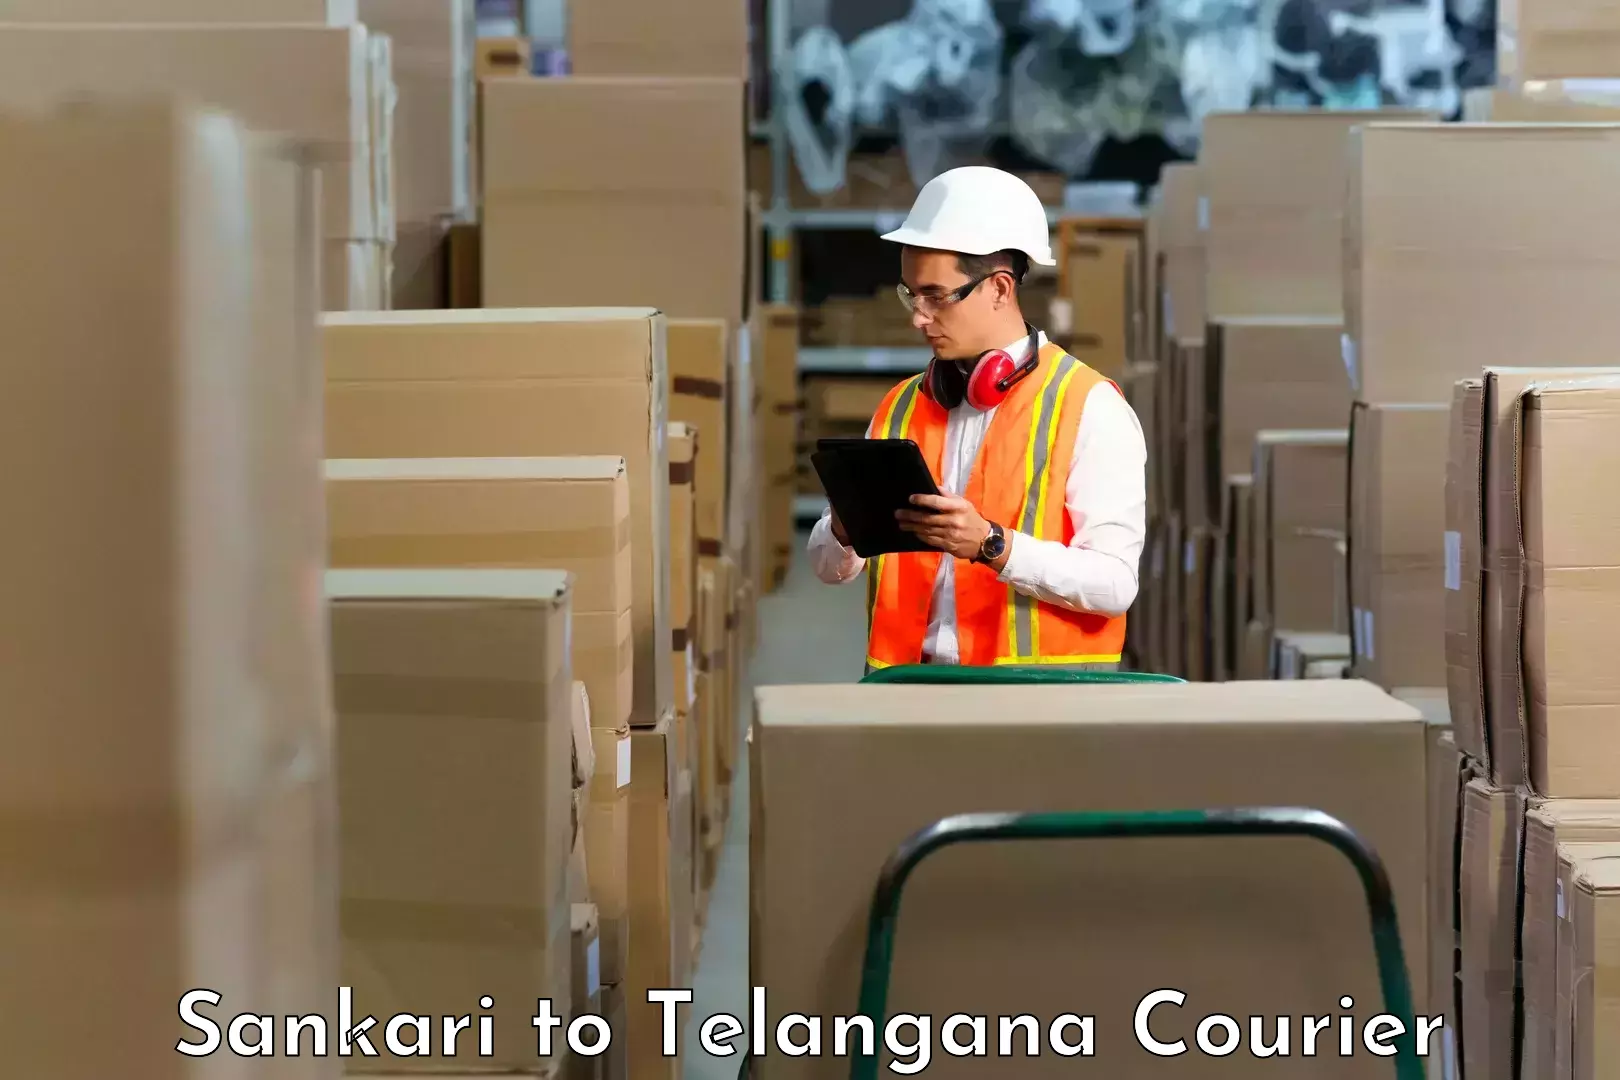 Fast shipping solutions Sankari to Yellandu